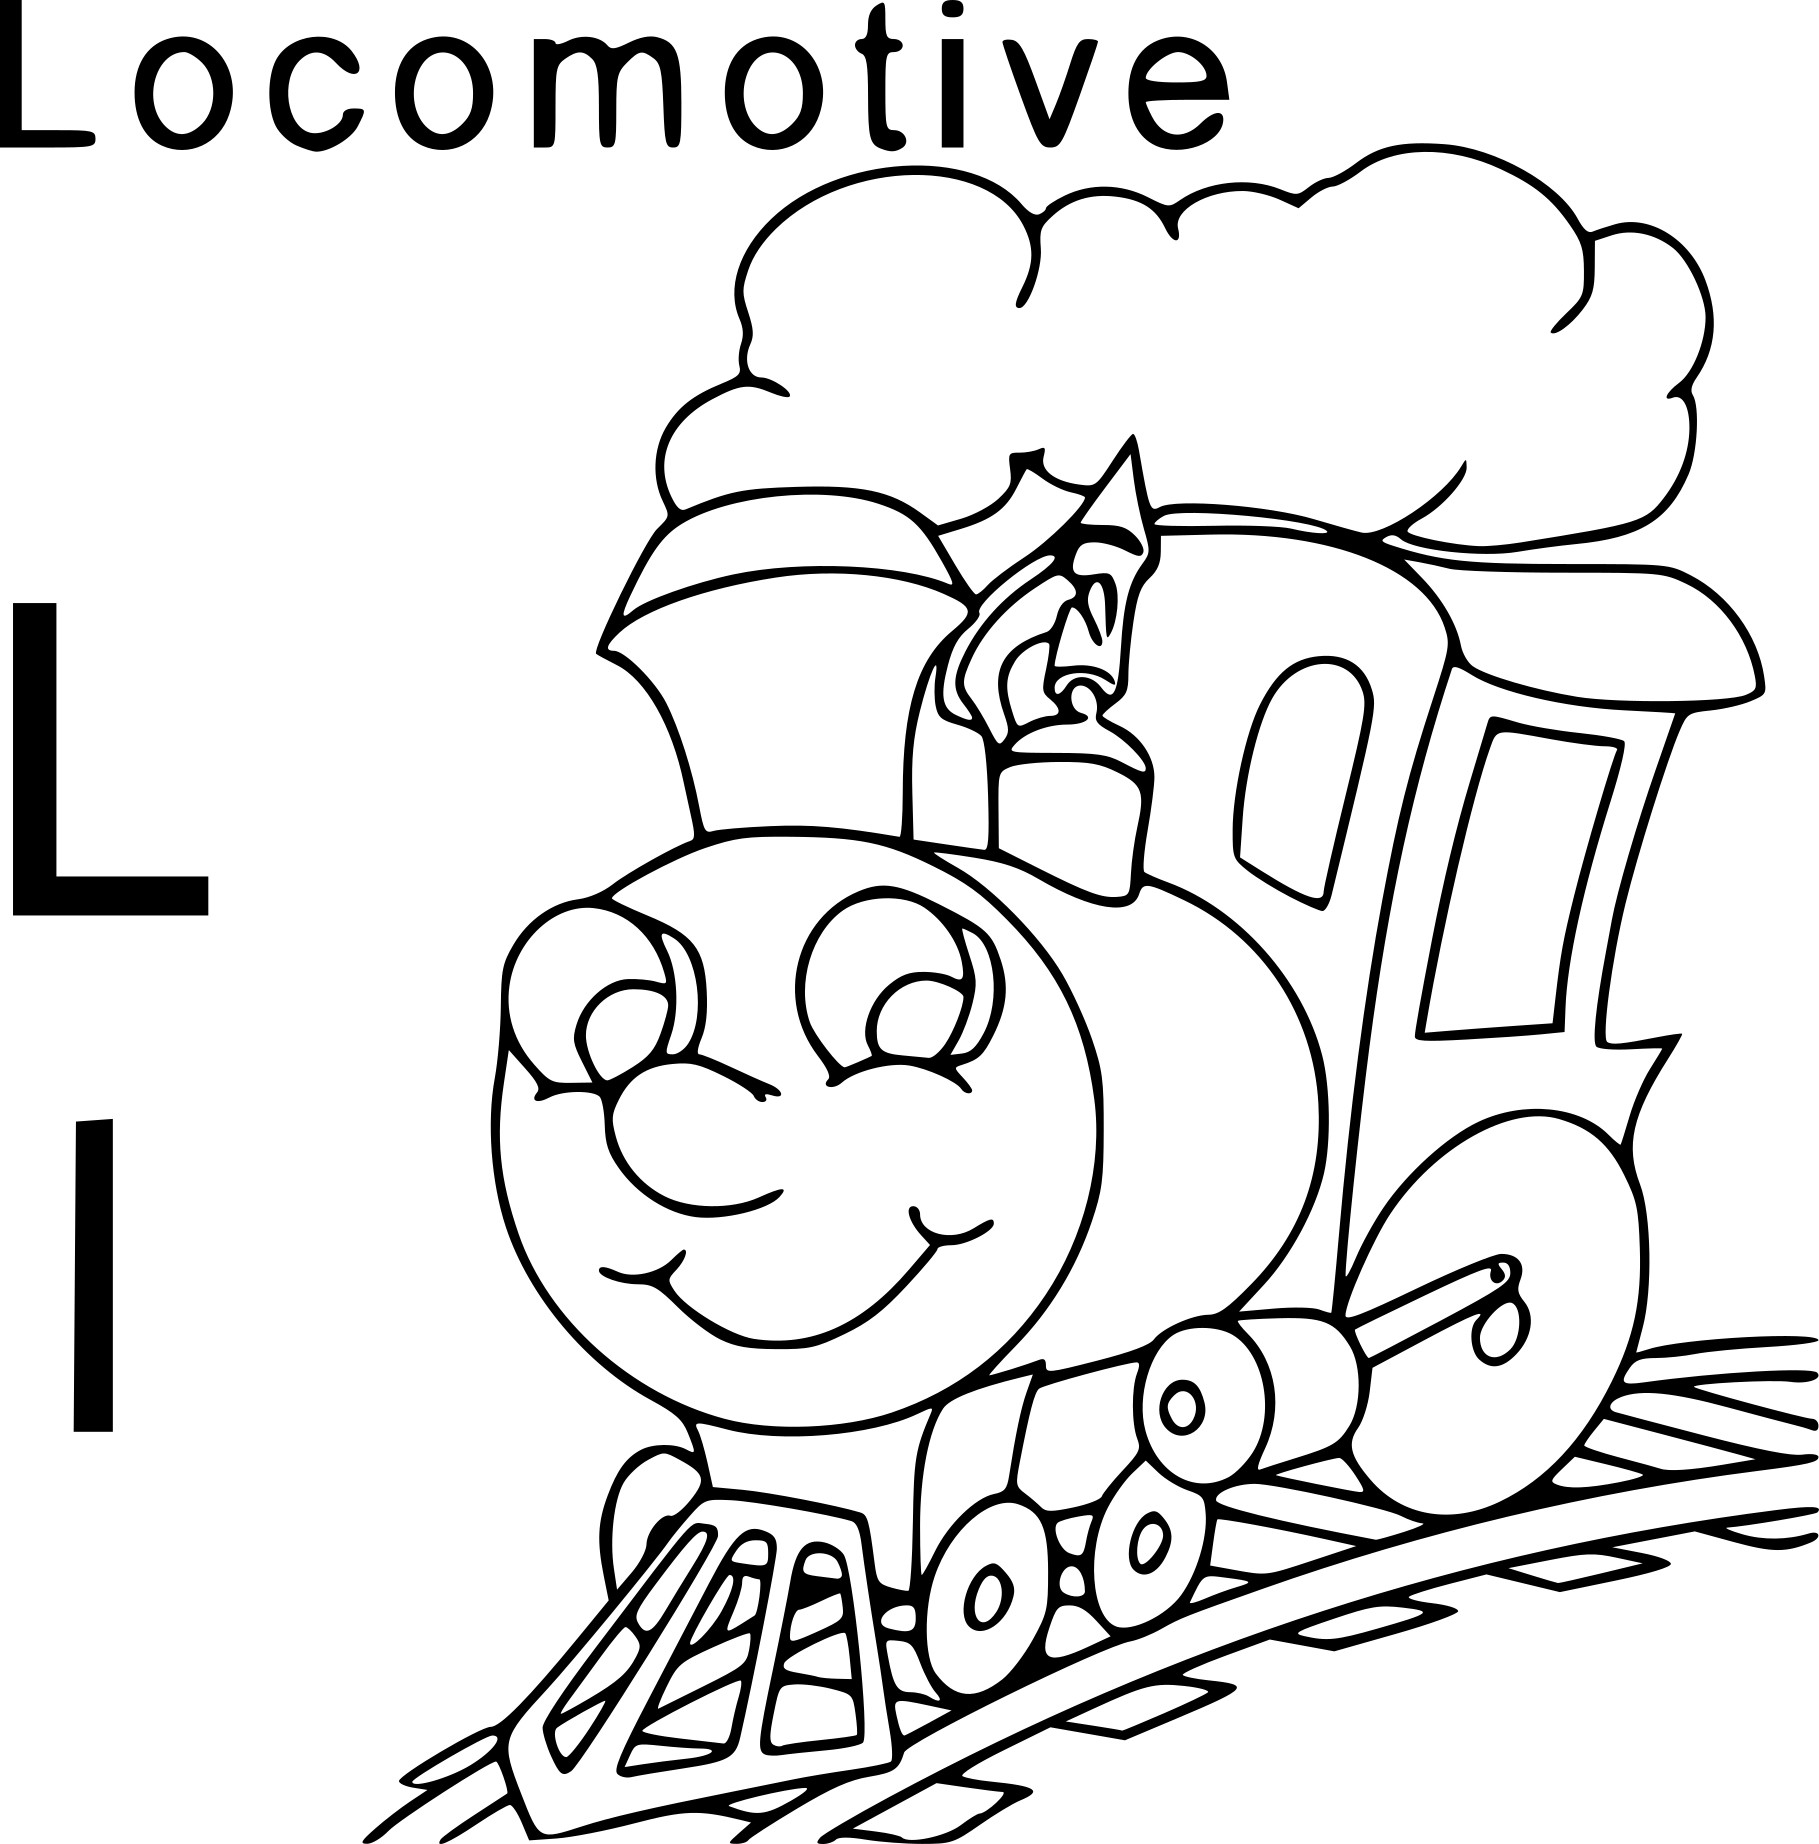 Disegno di L per Locomotiva da colorare